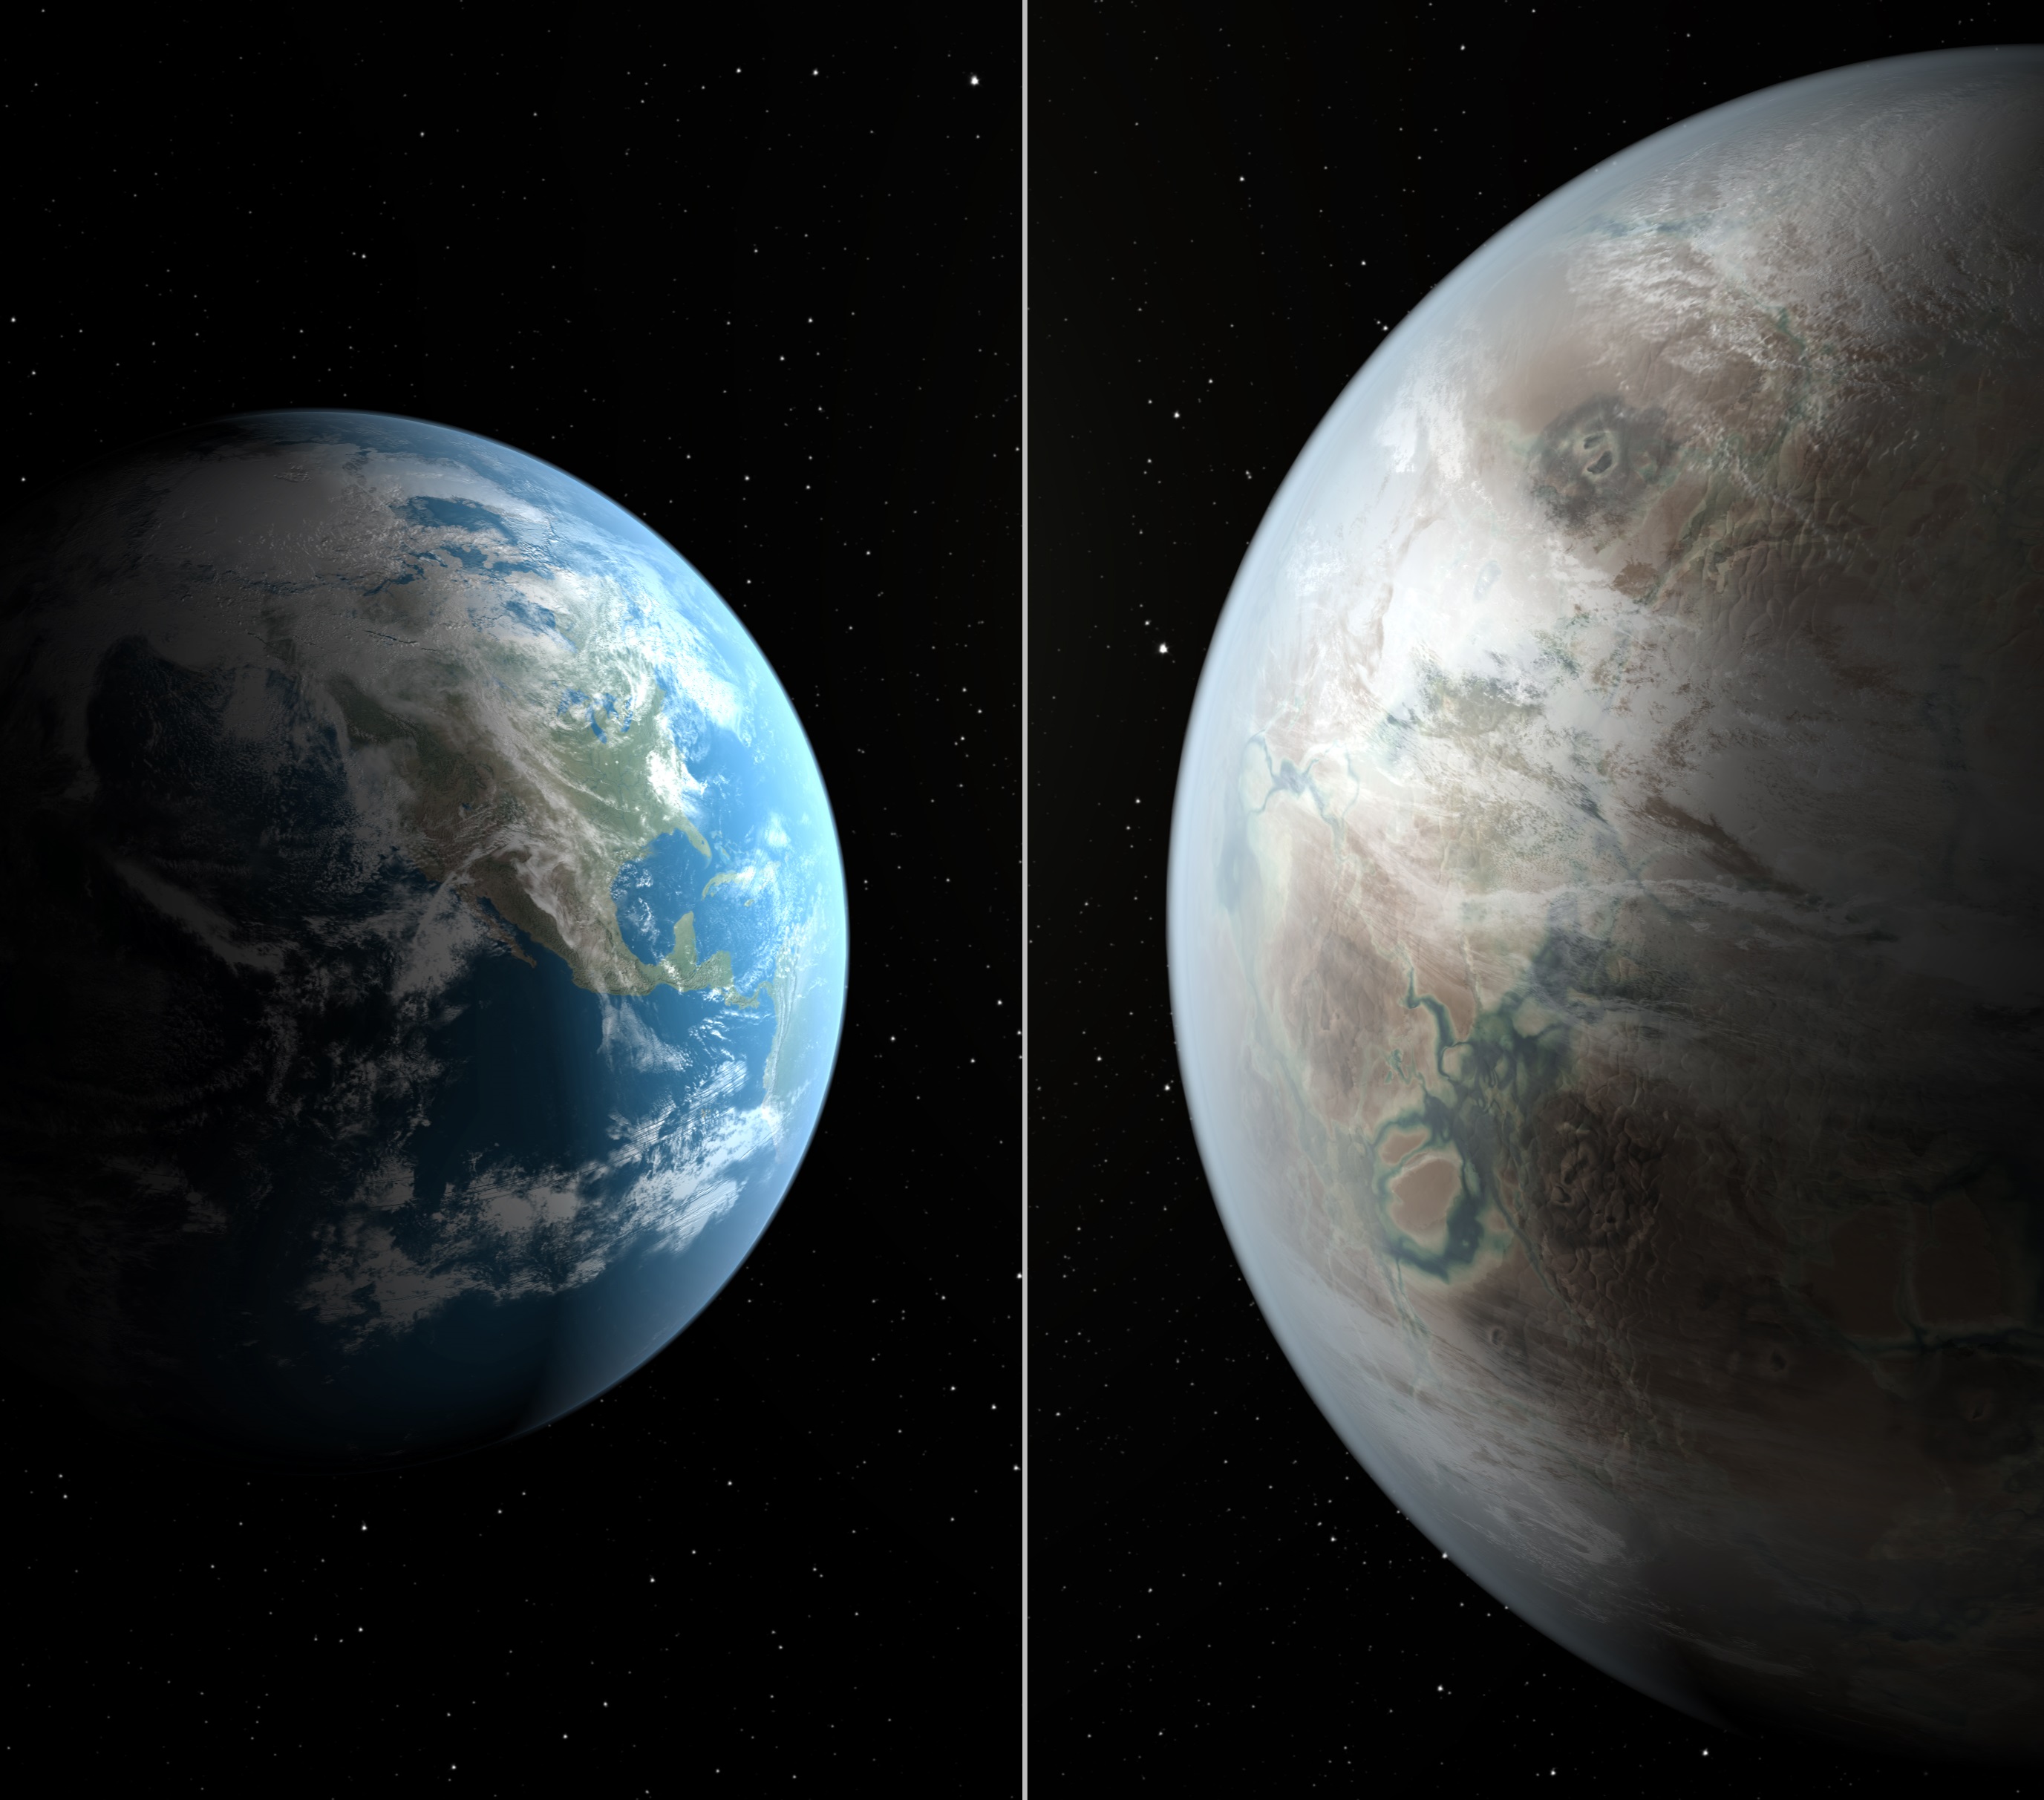 Сравнение между Земята и планетата Kepler 452b (худ. интерпретация)